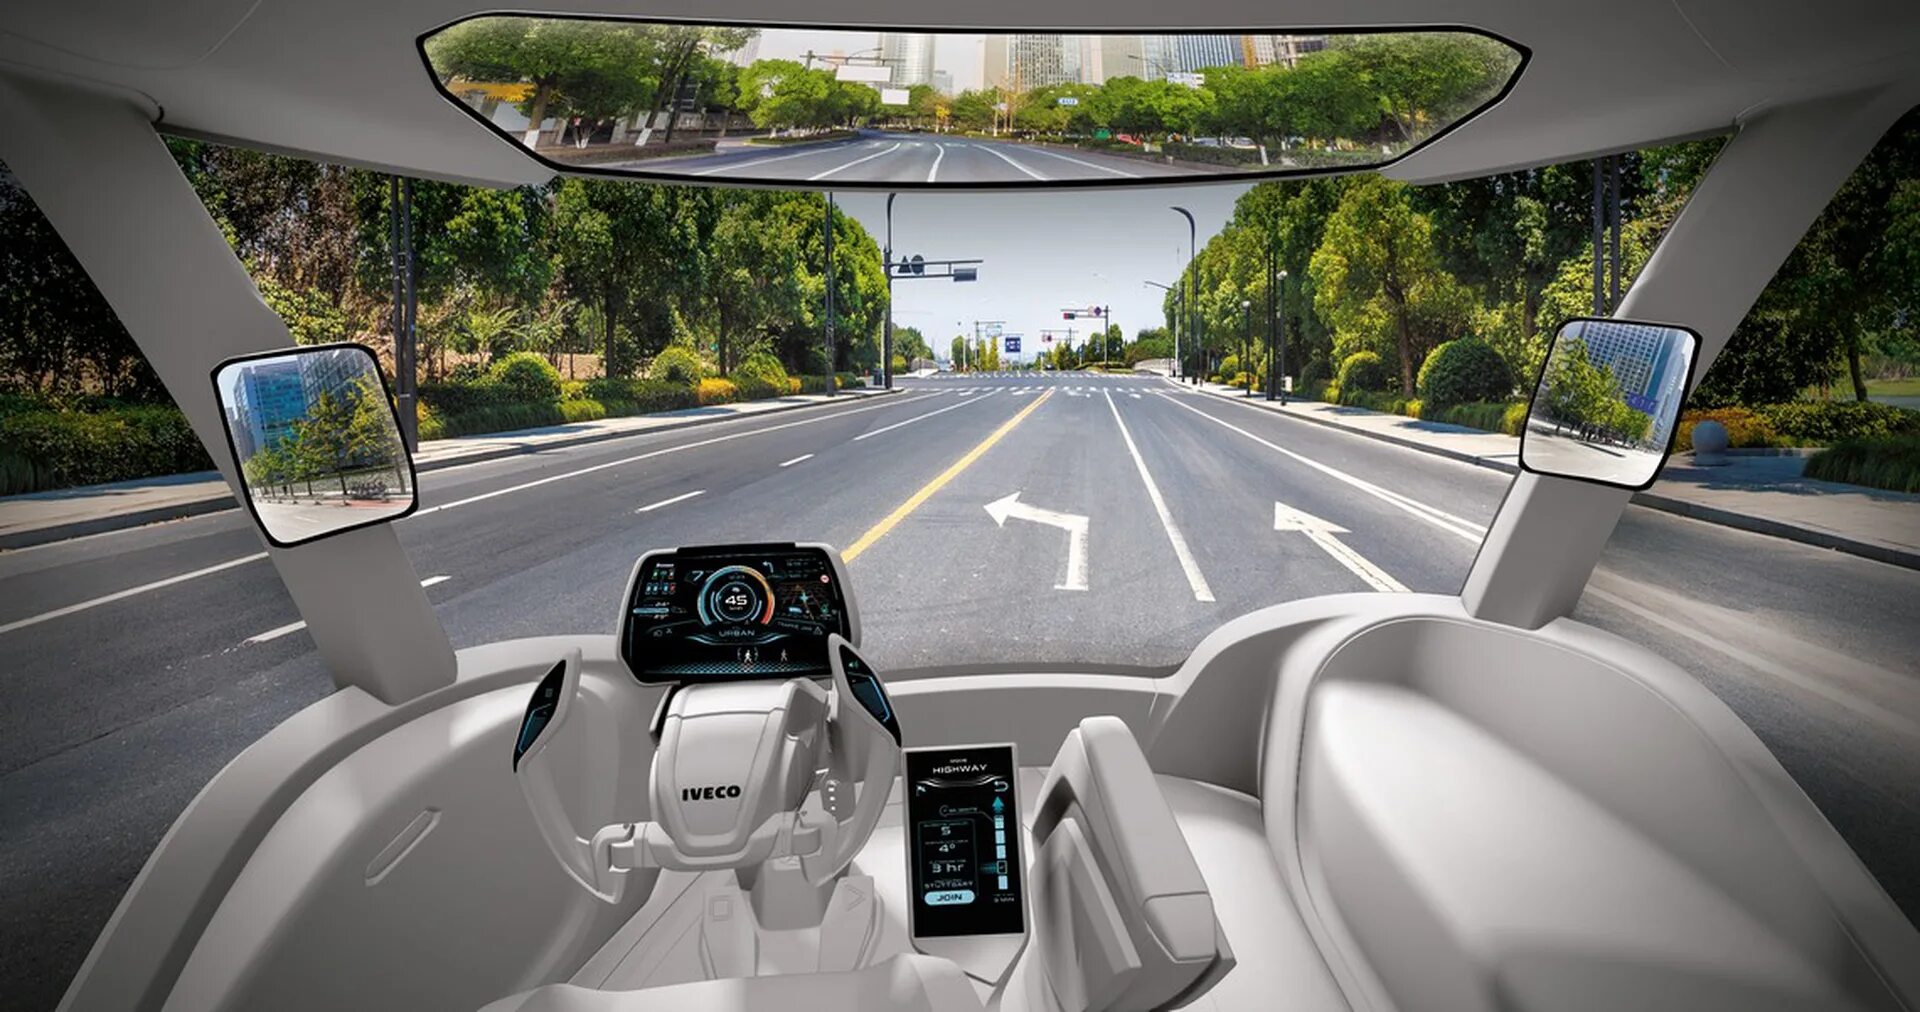 Unmanned vehicles. Беспилотные автомобили. Машина с автопилотом. Беспилотные транспортные средства. Беспилотные автомобили будущего.